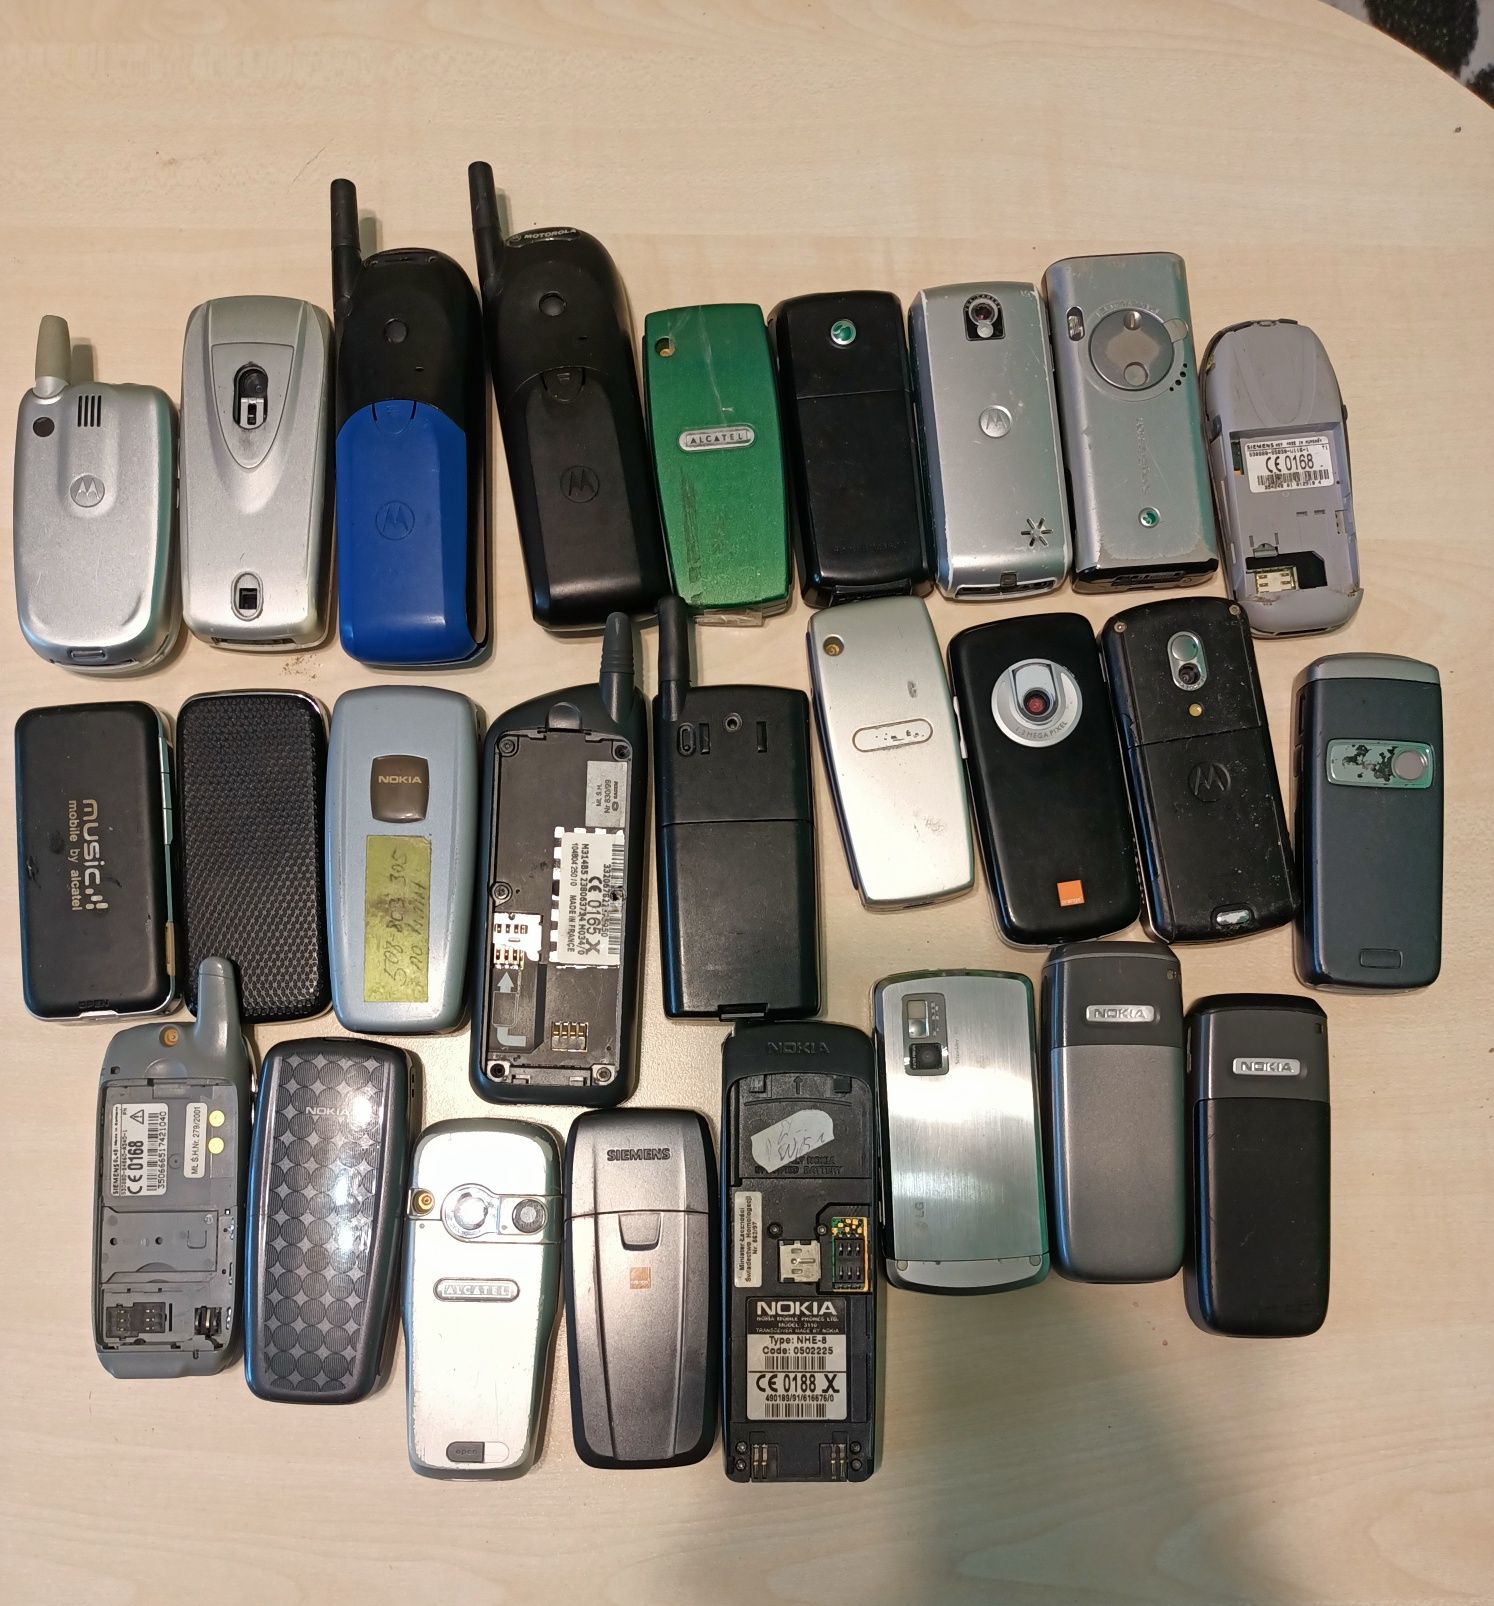 Stare telefony komórkowe cena za całość